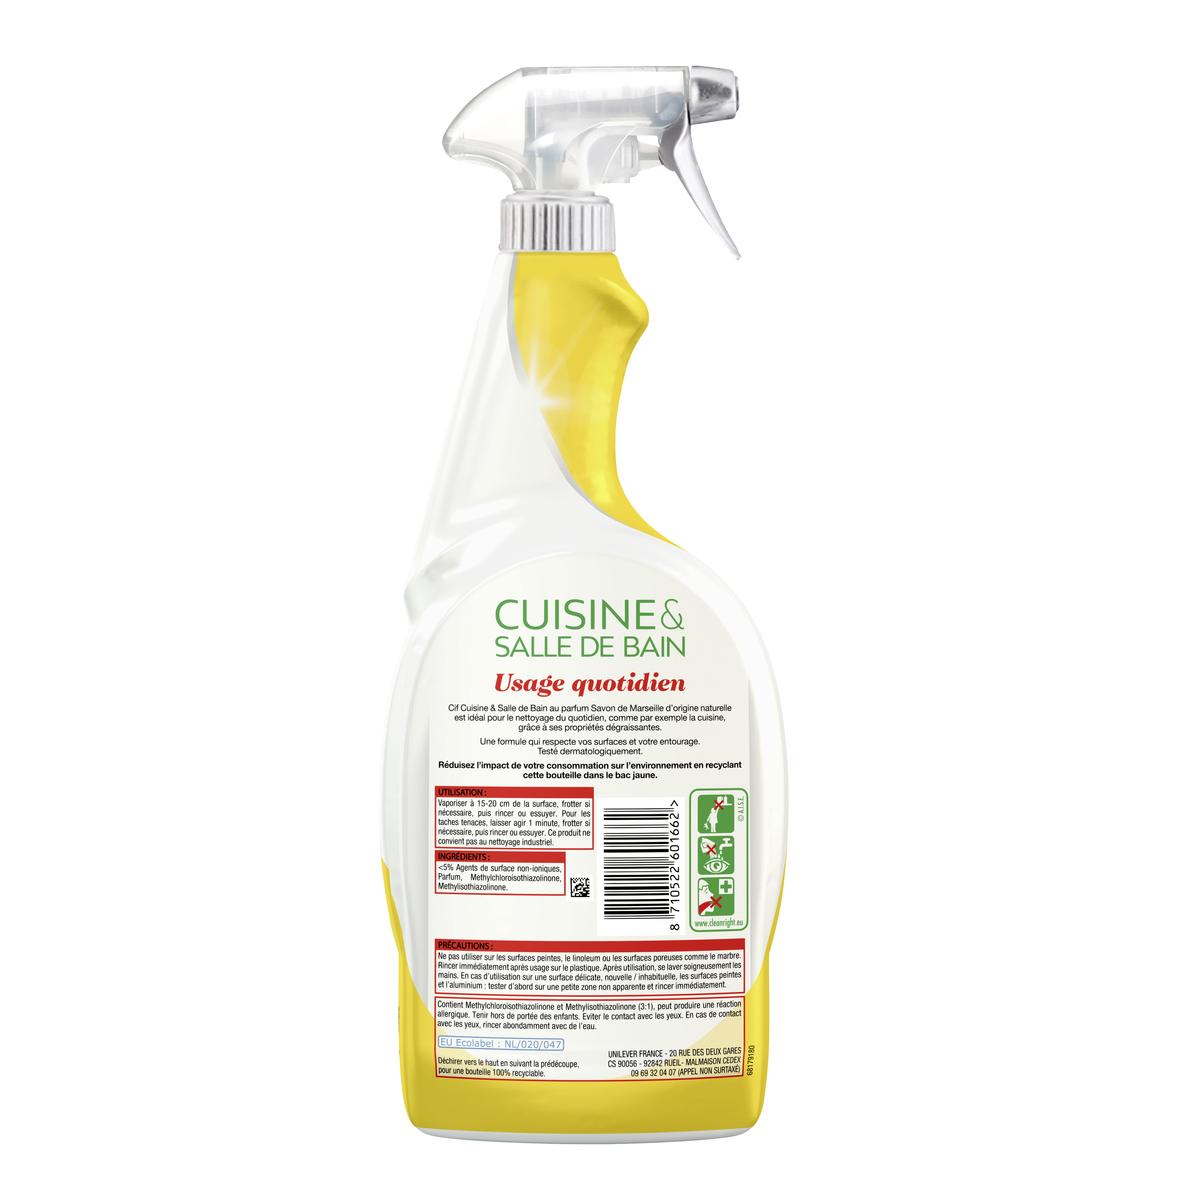 Cif - cuisine et salle de bain - savon de marseille reviews in Household  Cleaning Products - ChickAdvisor